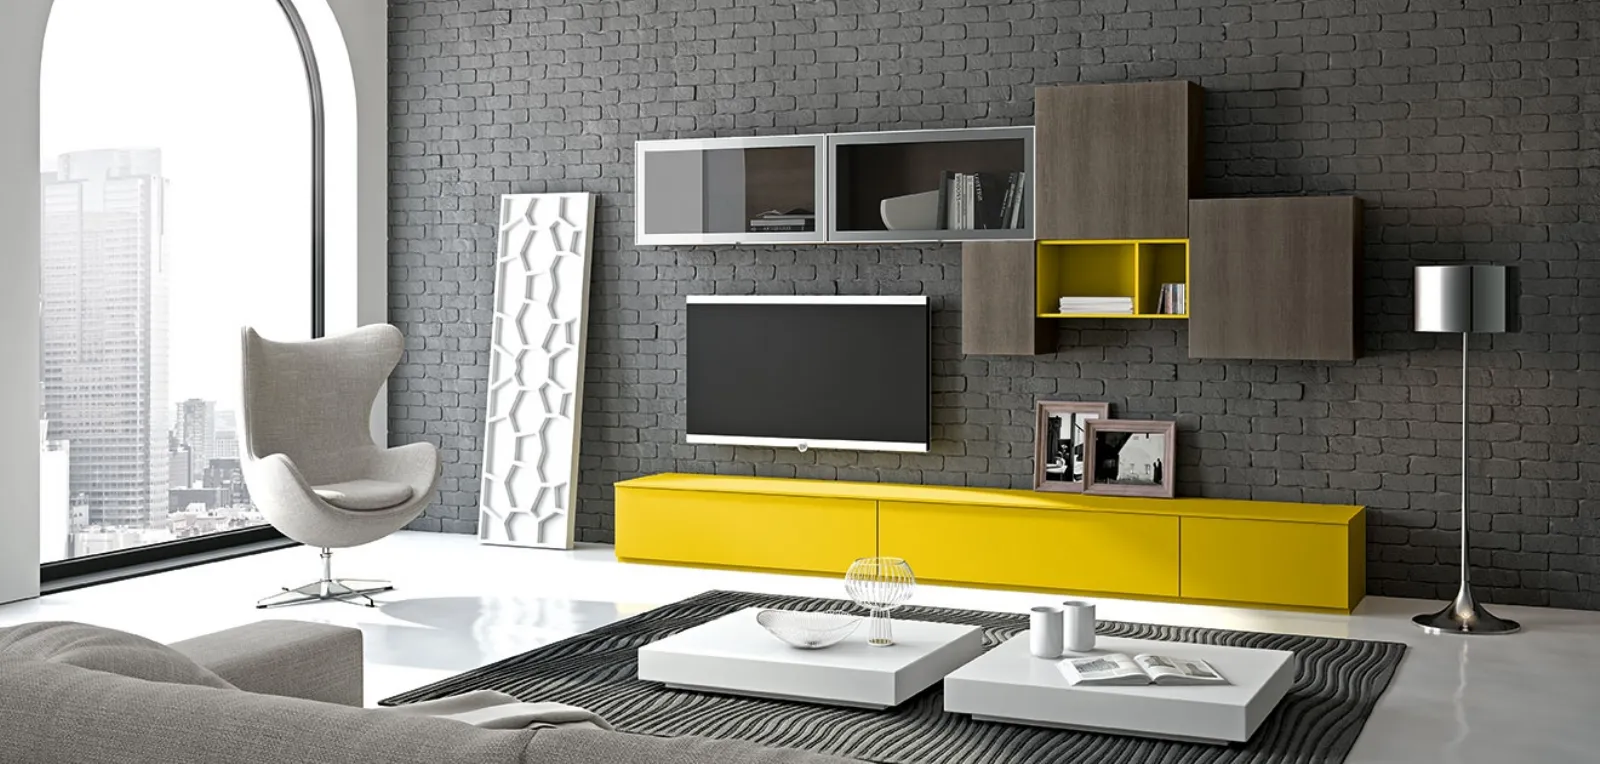 Mobili soggiorno moderni colorati for Soggiorno arredamento moderno